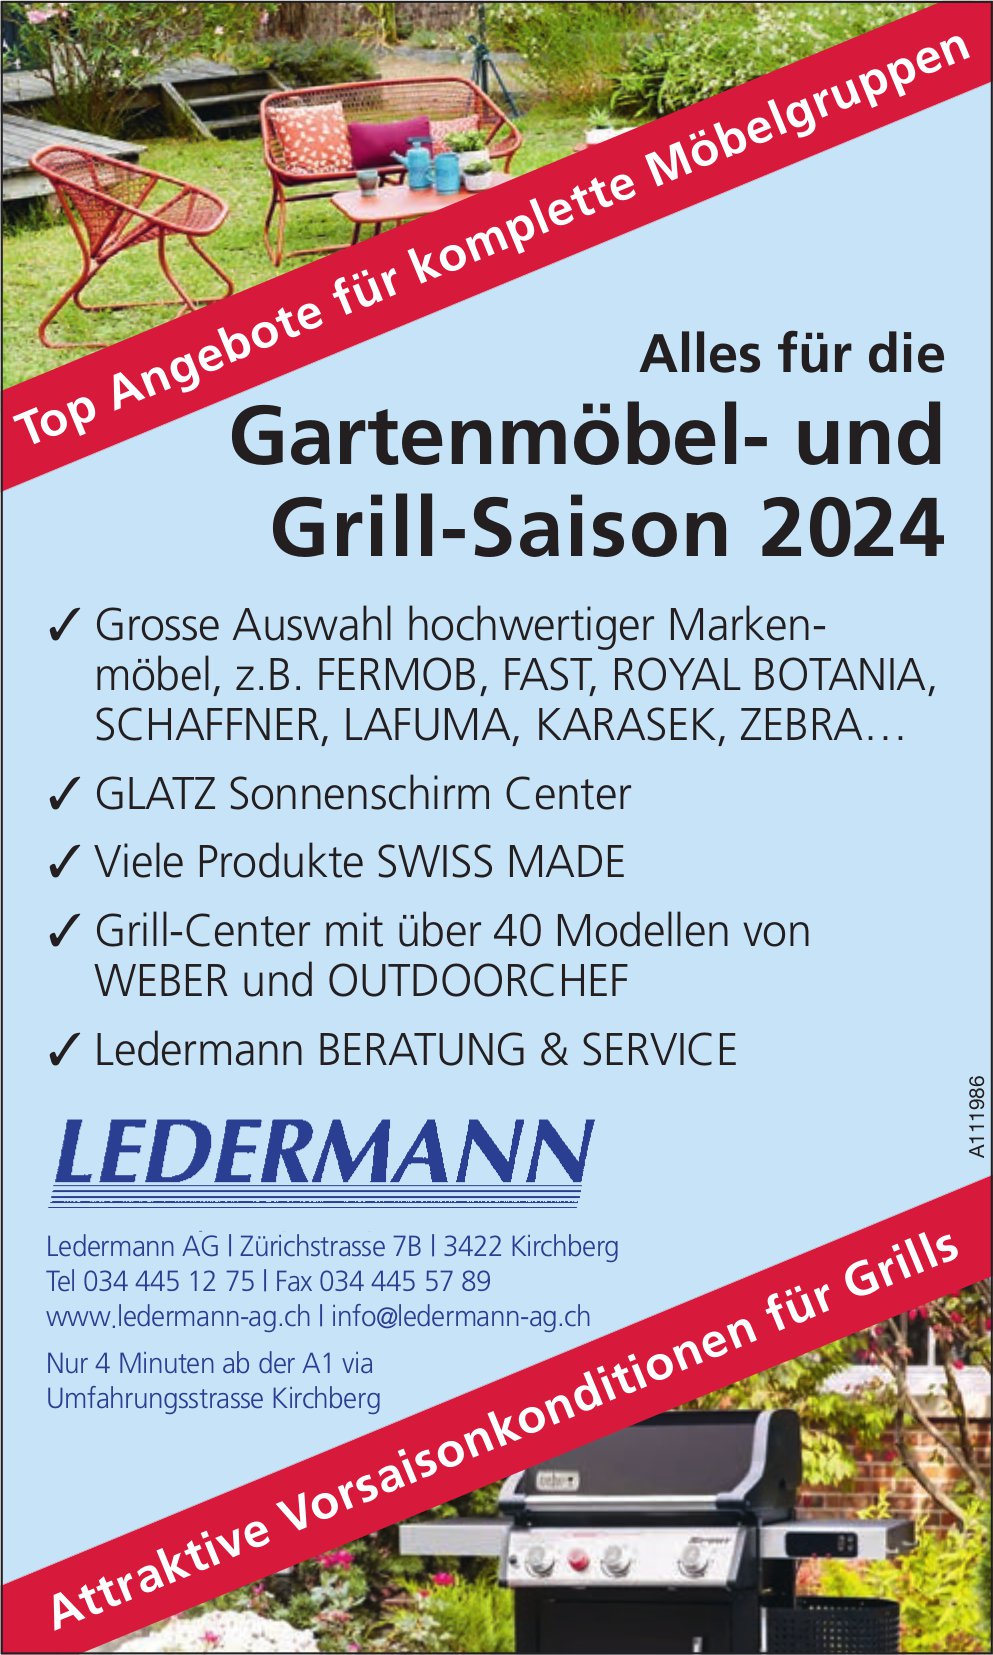 Ledermann AG, Kirchberg - Alles für die Gartenmöbel- und Grill-Saison 2024